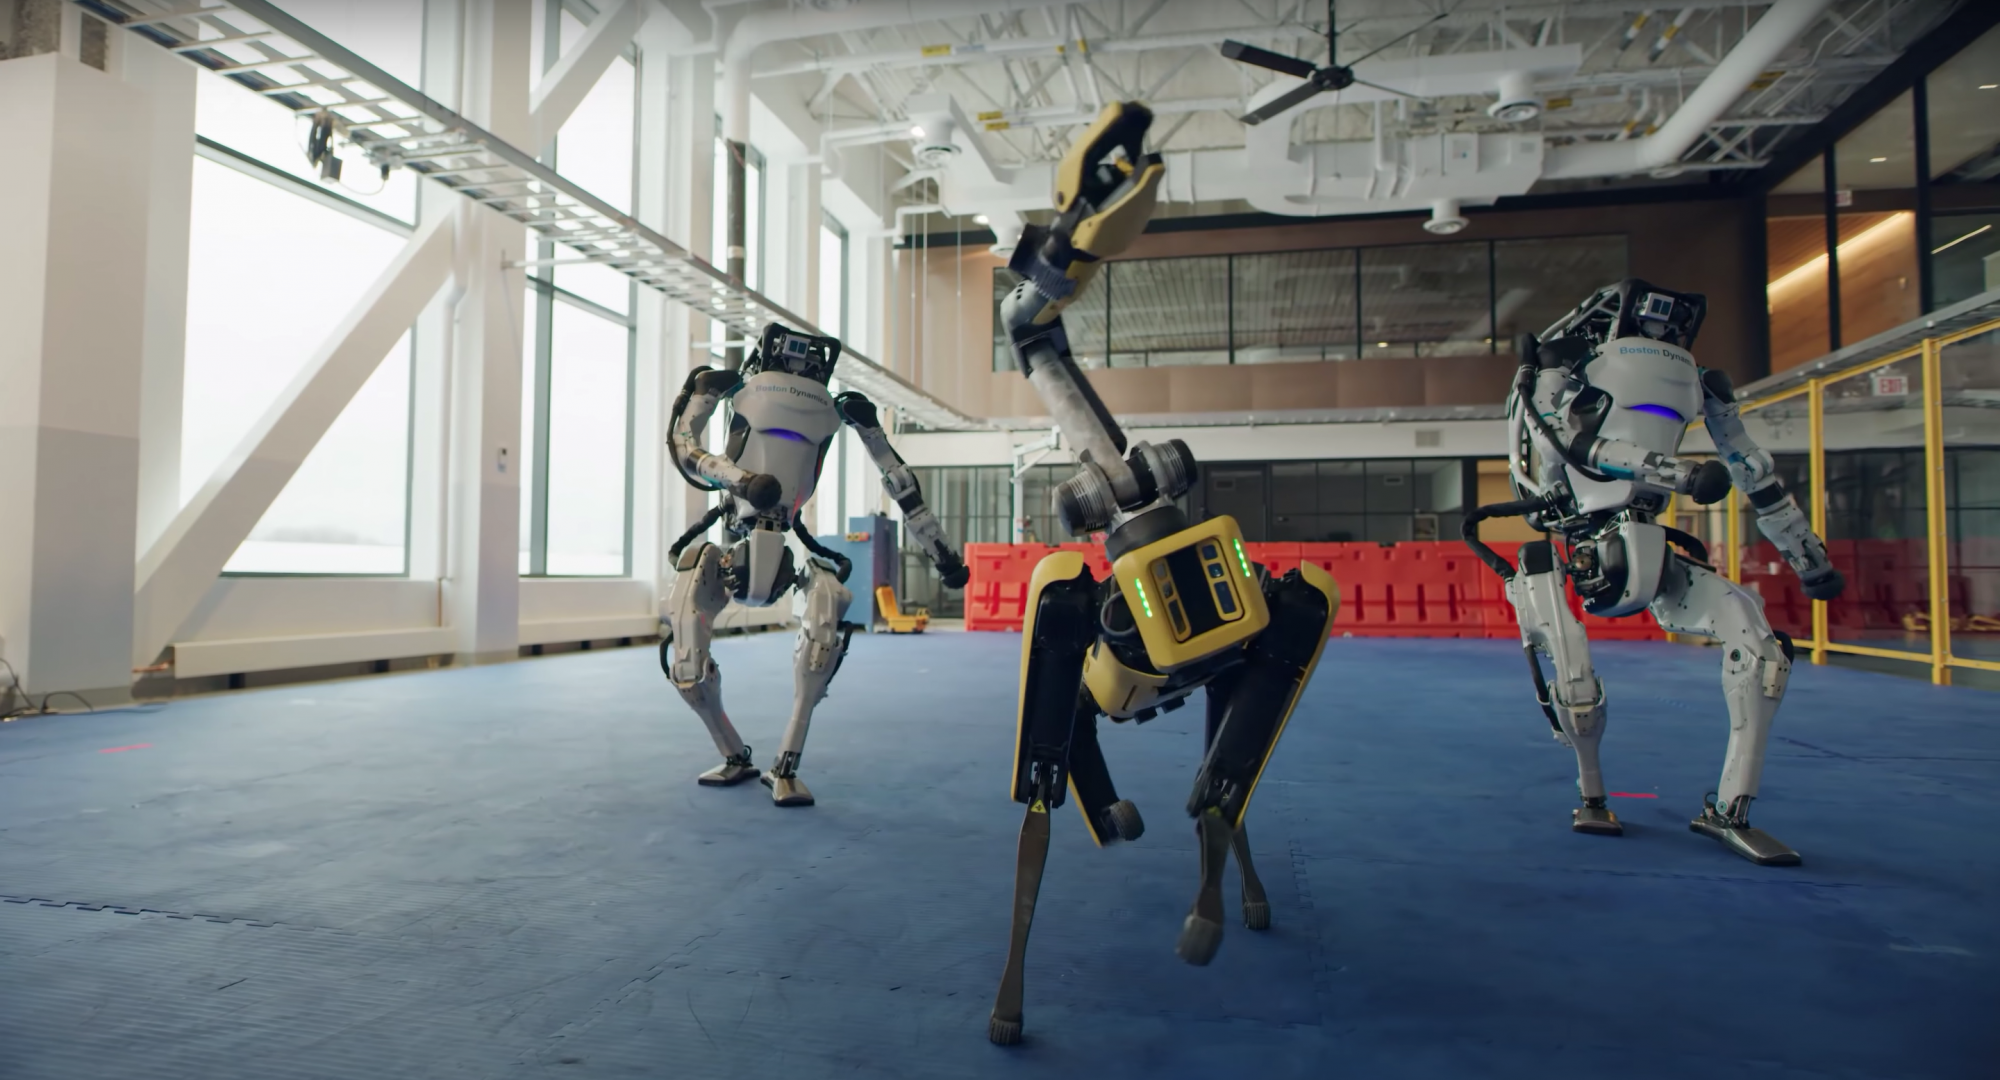 A Boston Dynamics robotjainak mozgása egészen élethű, most már csak okosabbá kellene tenni őket